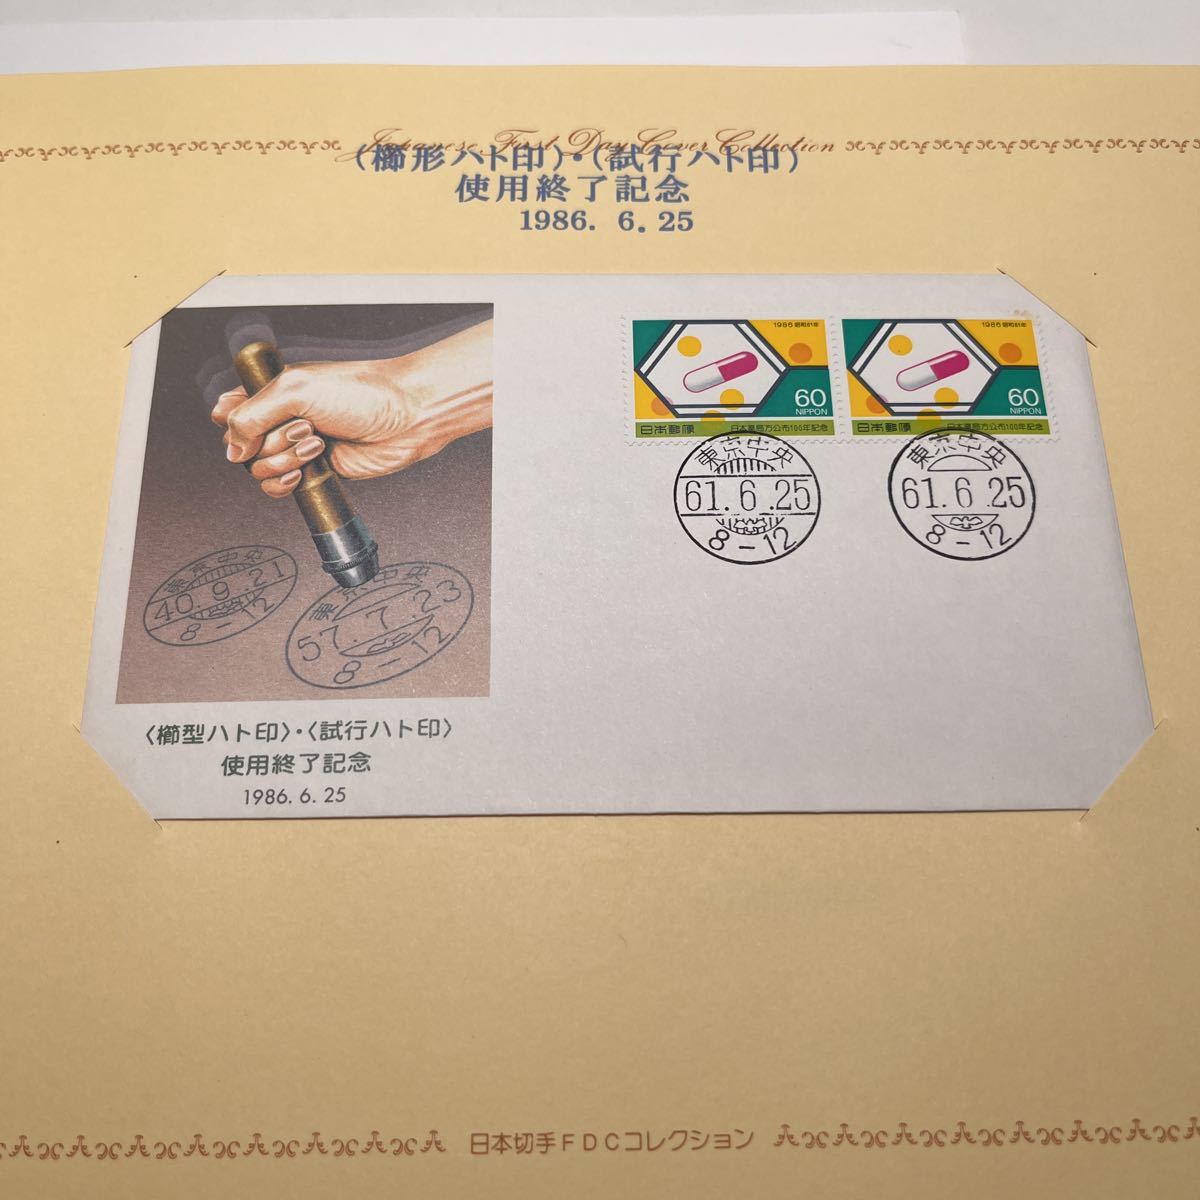 1986年記念切手 ハト印使用終了記念 昭和61年 初日カバー First day Cover送料84円 解説書付き 日本薬局方公布１００年記念切手の画像1